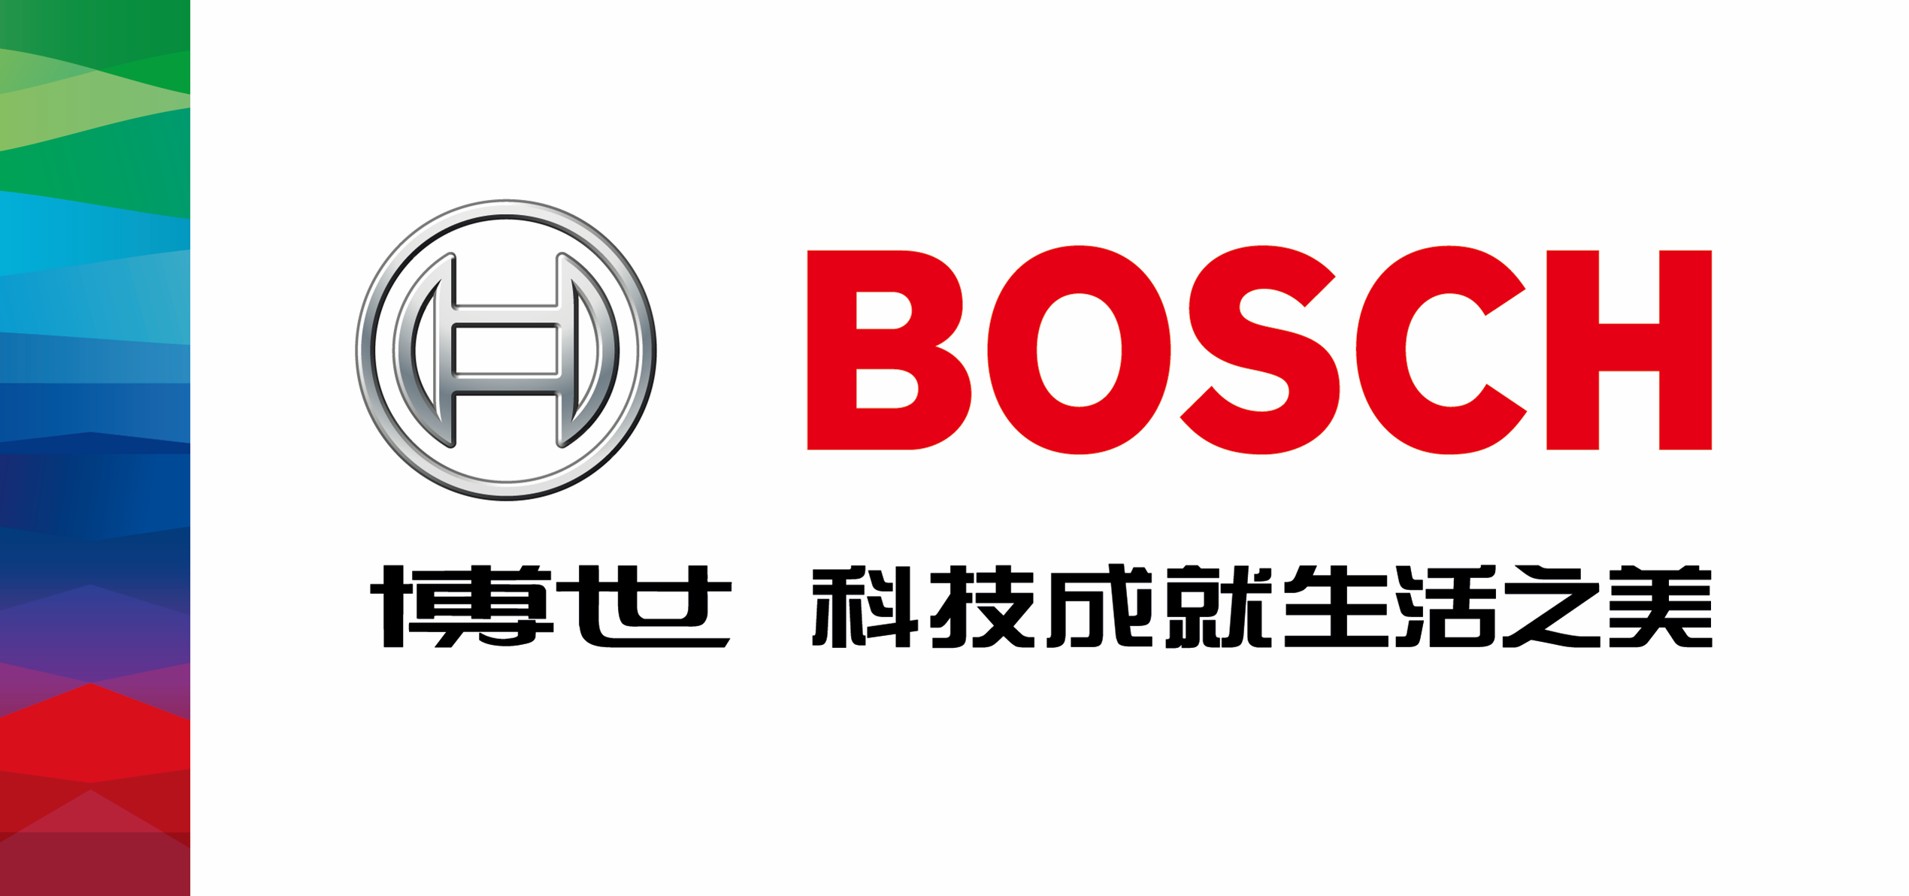 Bosch, Robert Bosch Taiwan Co., Ltd.